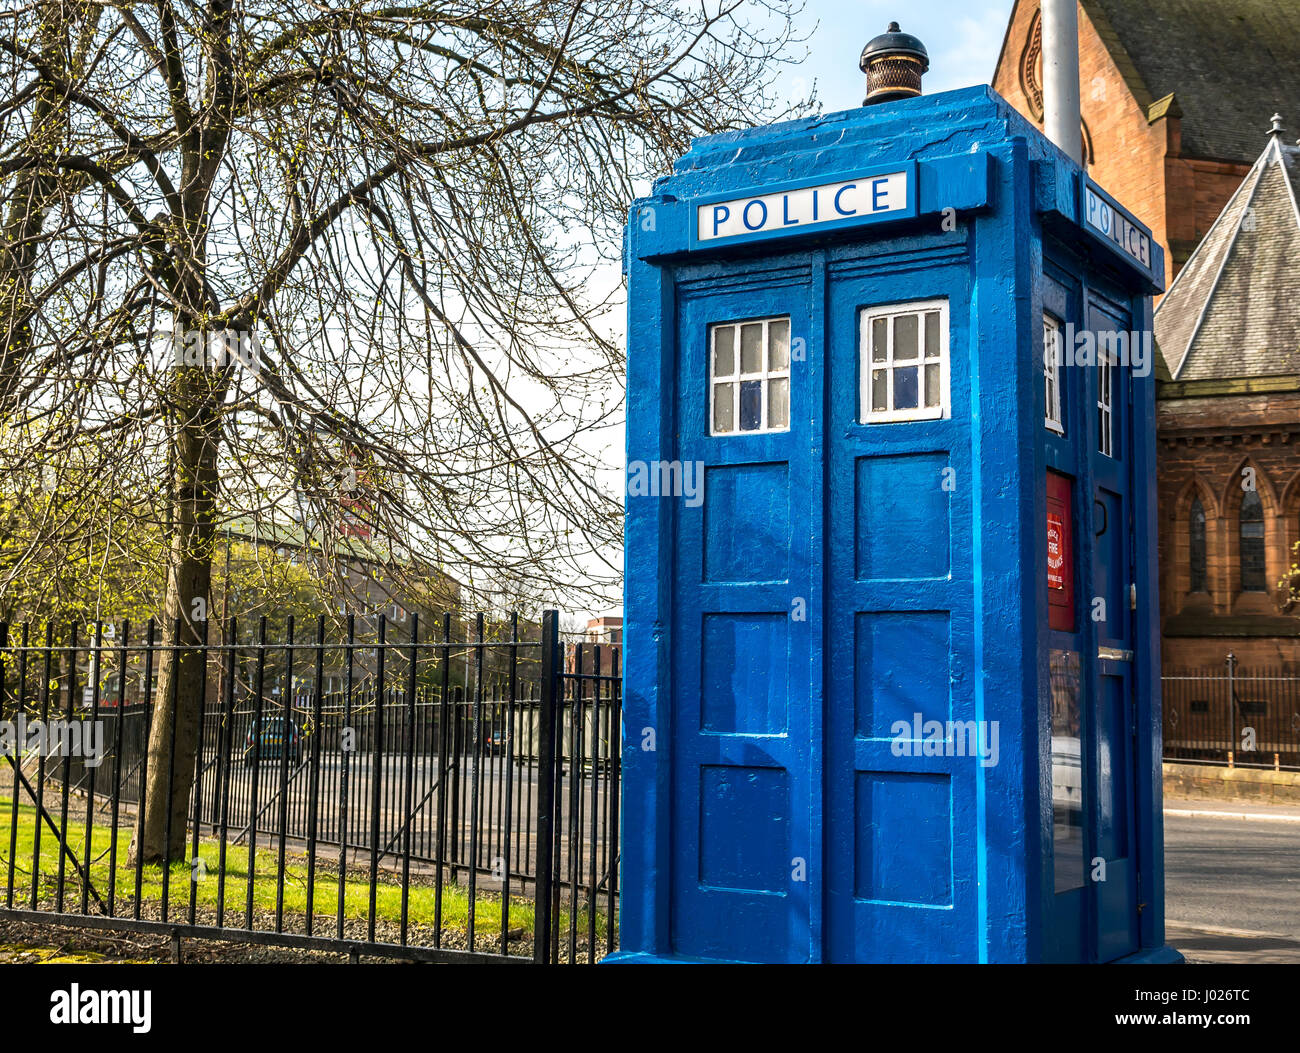 Ancien bleu boîte de police, Tardis, centre-ville Street, Glasgow, Scotland, UK avec le grès rouge en arrière-plan, Ecosse, Royaume-Uni Banque D'Images